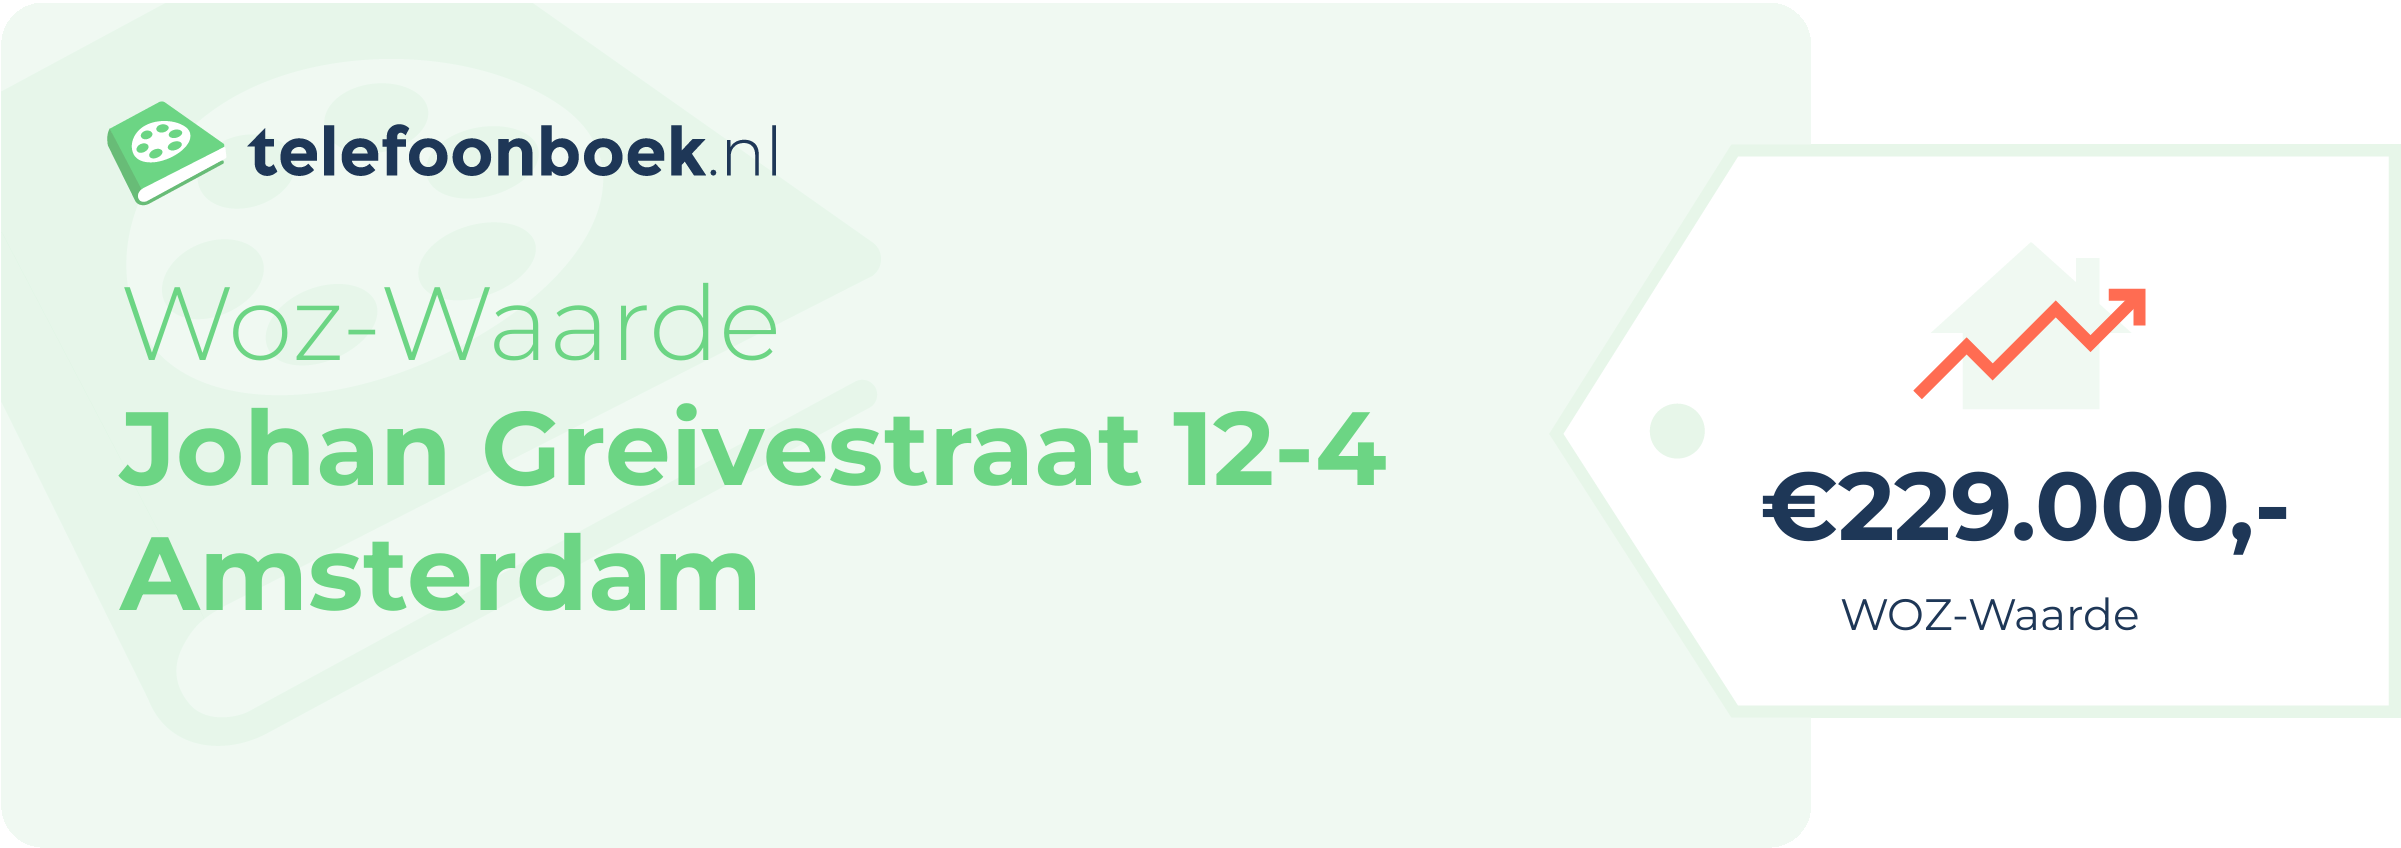 WOZ-waarde Johan Greivestraat 12-4 Amsterdam